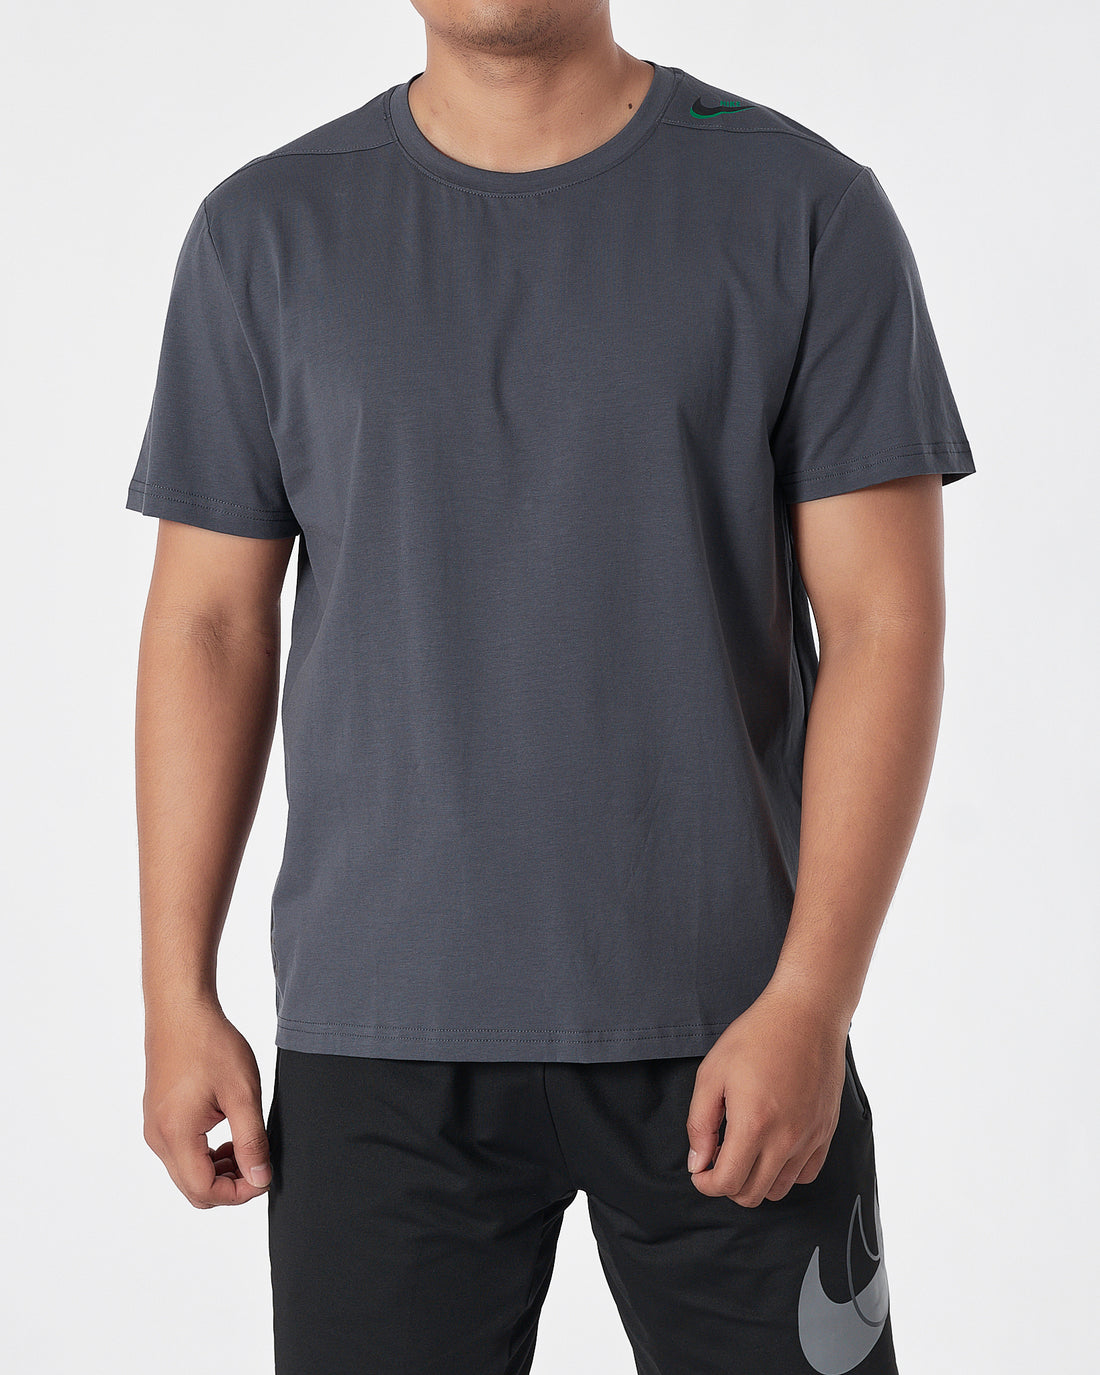 NIK Swooh  Shoulder Printed Men Dark Grey T-Shirt 13.50